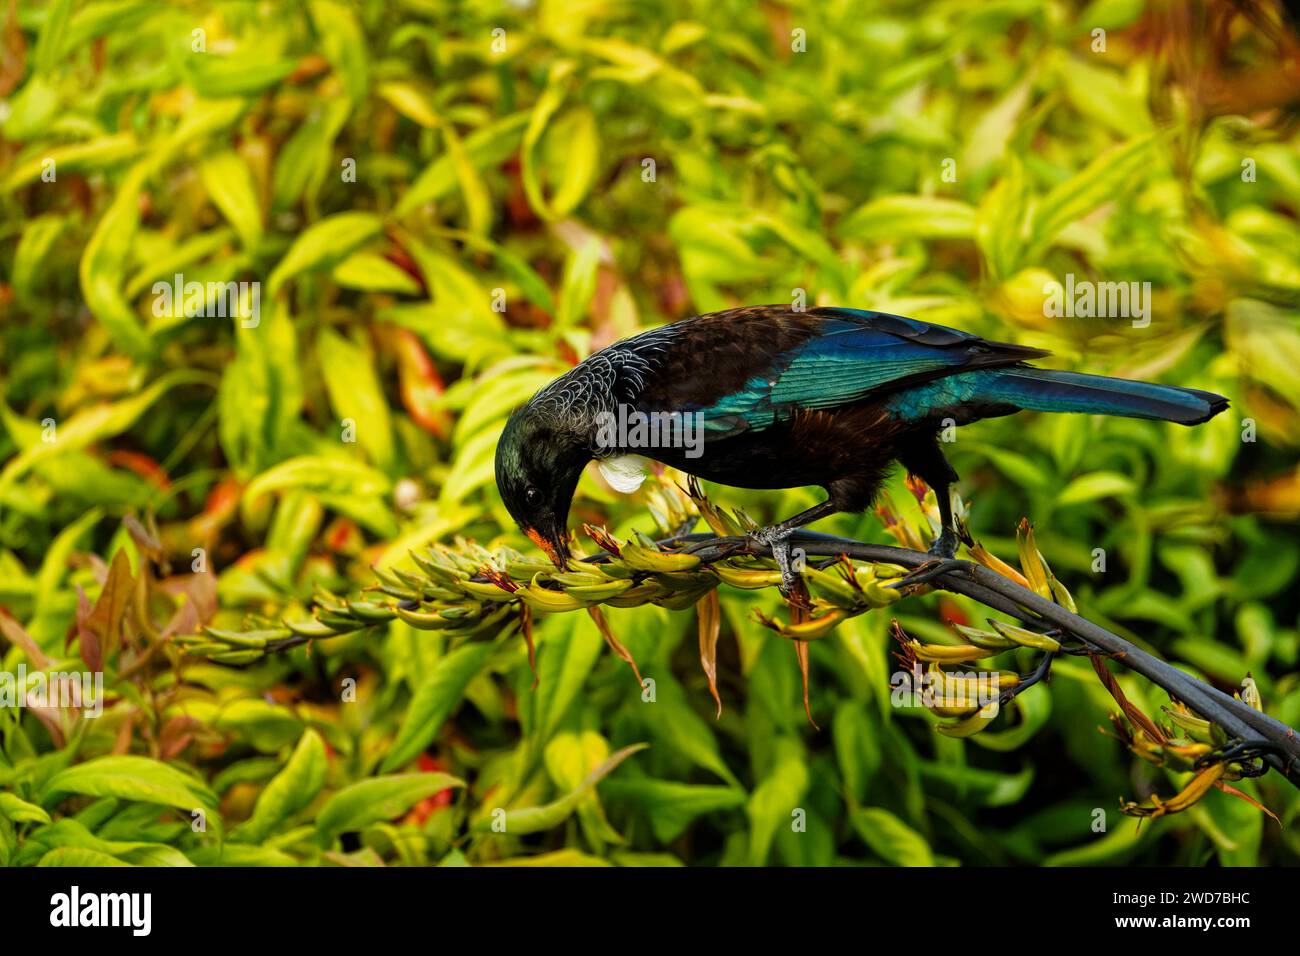 Un Tui, oiseau passerine endémique d'Aotearoa / Nouvelle-Zélande, se nourrissant de nectar de plante de lin. La fleur étamine déposant du pollen orange sur sa tête. Banque D'Images